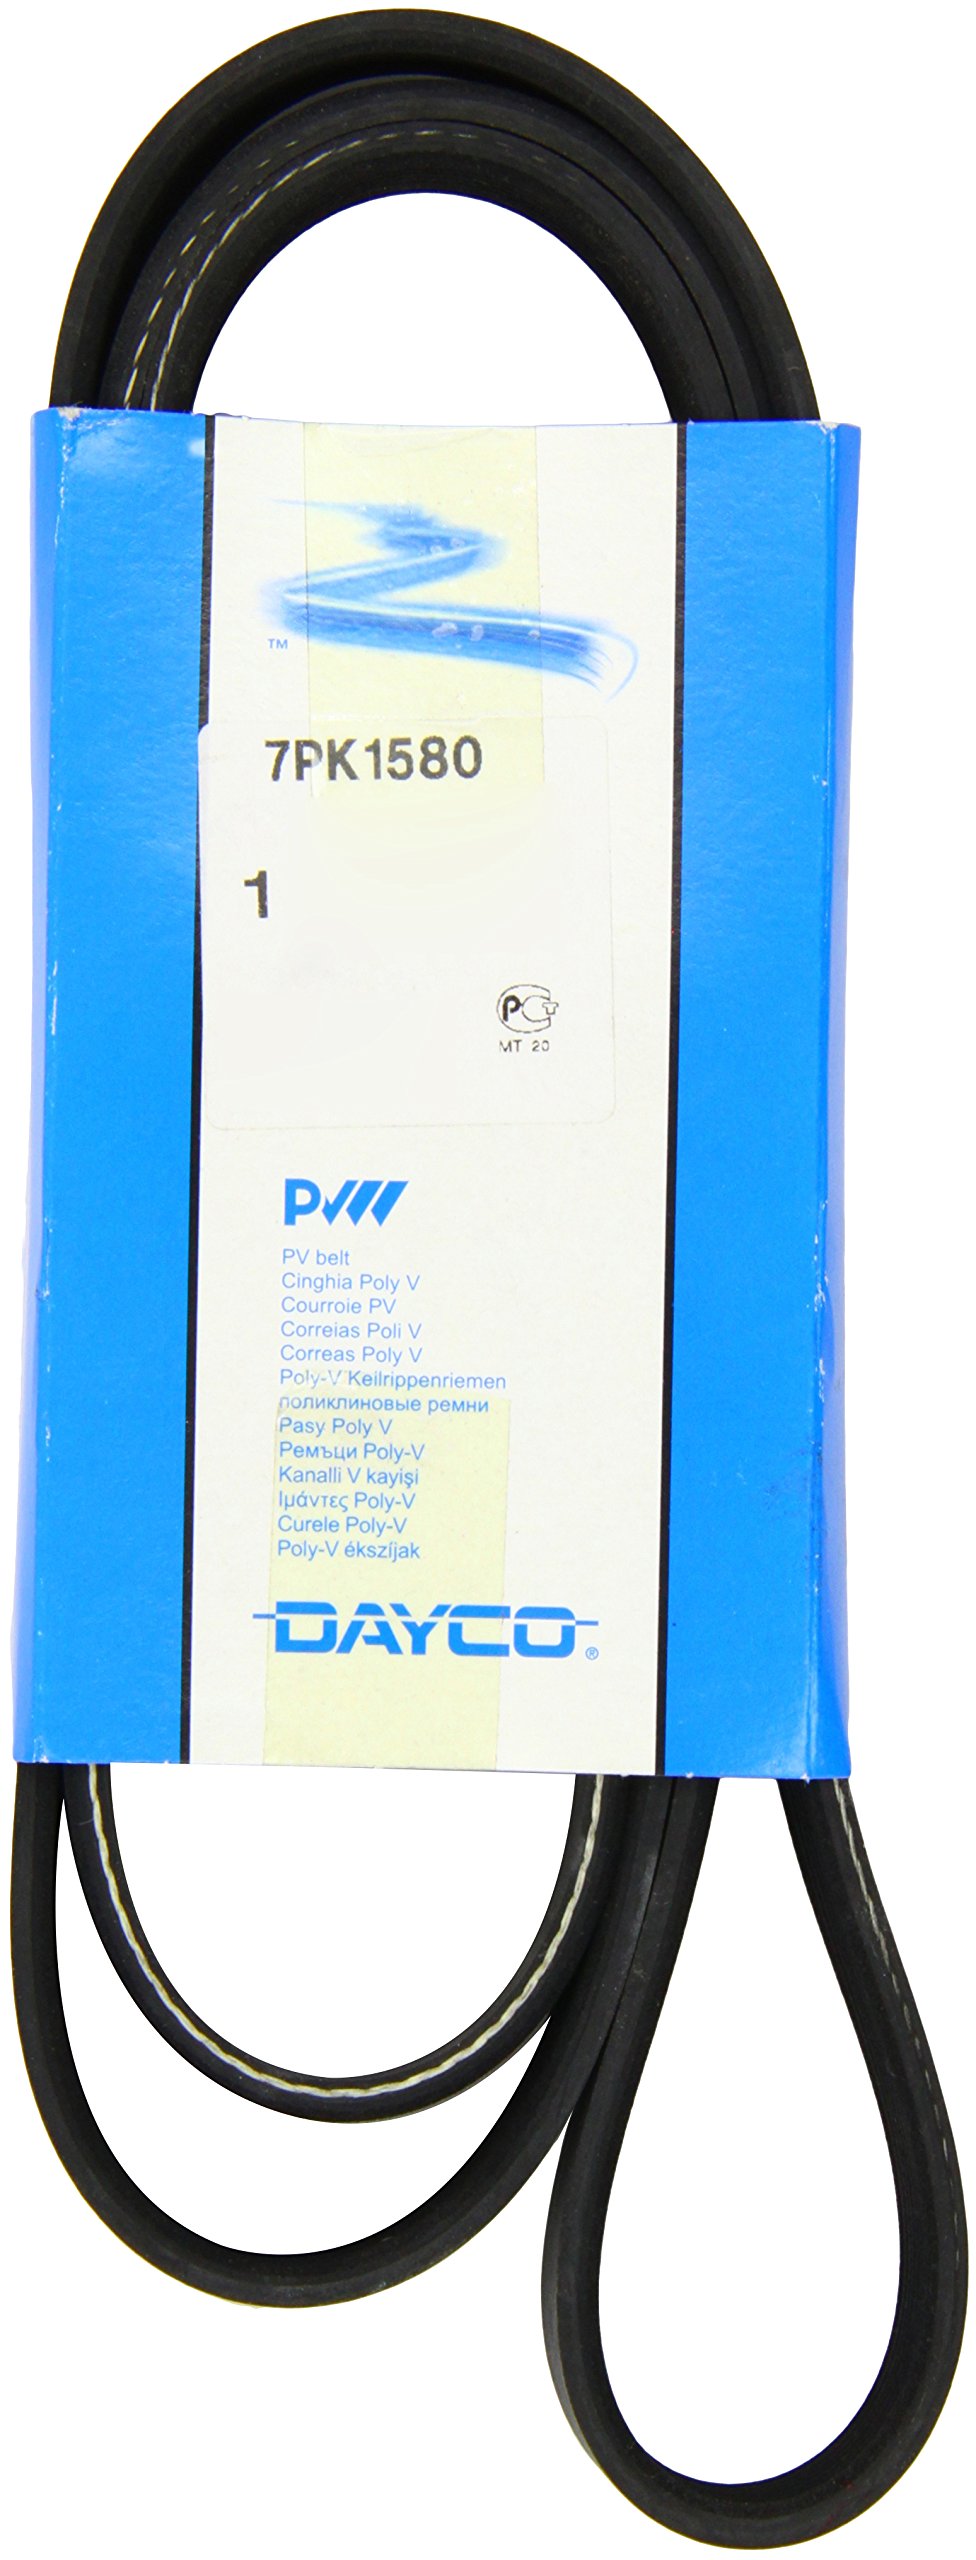 Metzger 7PK1580 DAYCO Keilrippenriemen von Dayco